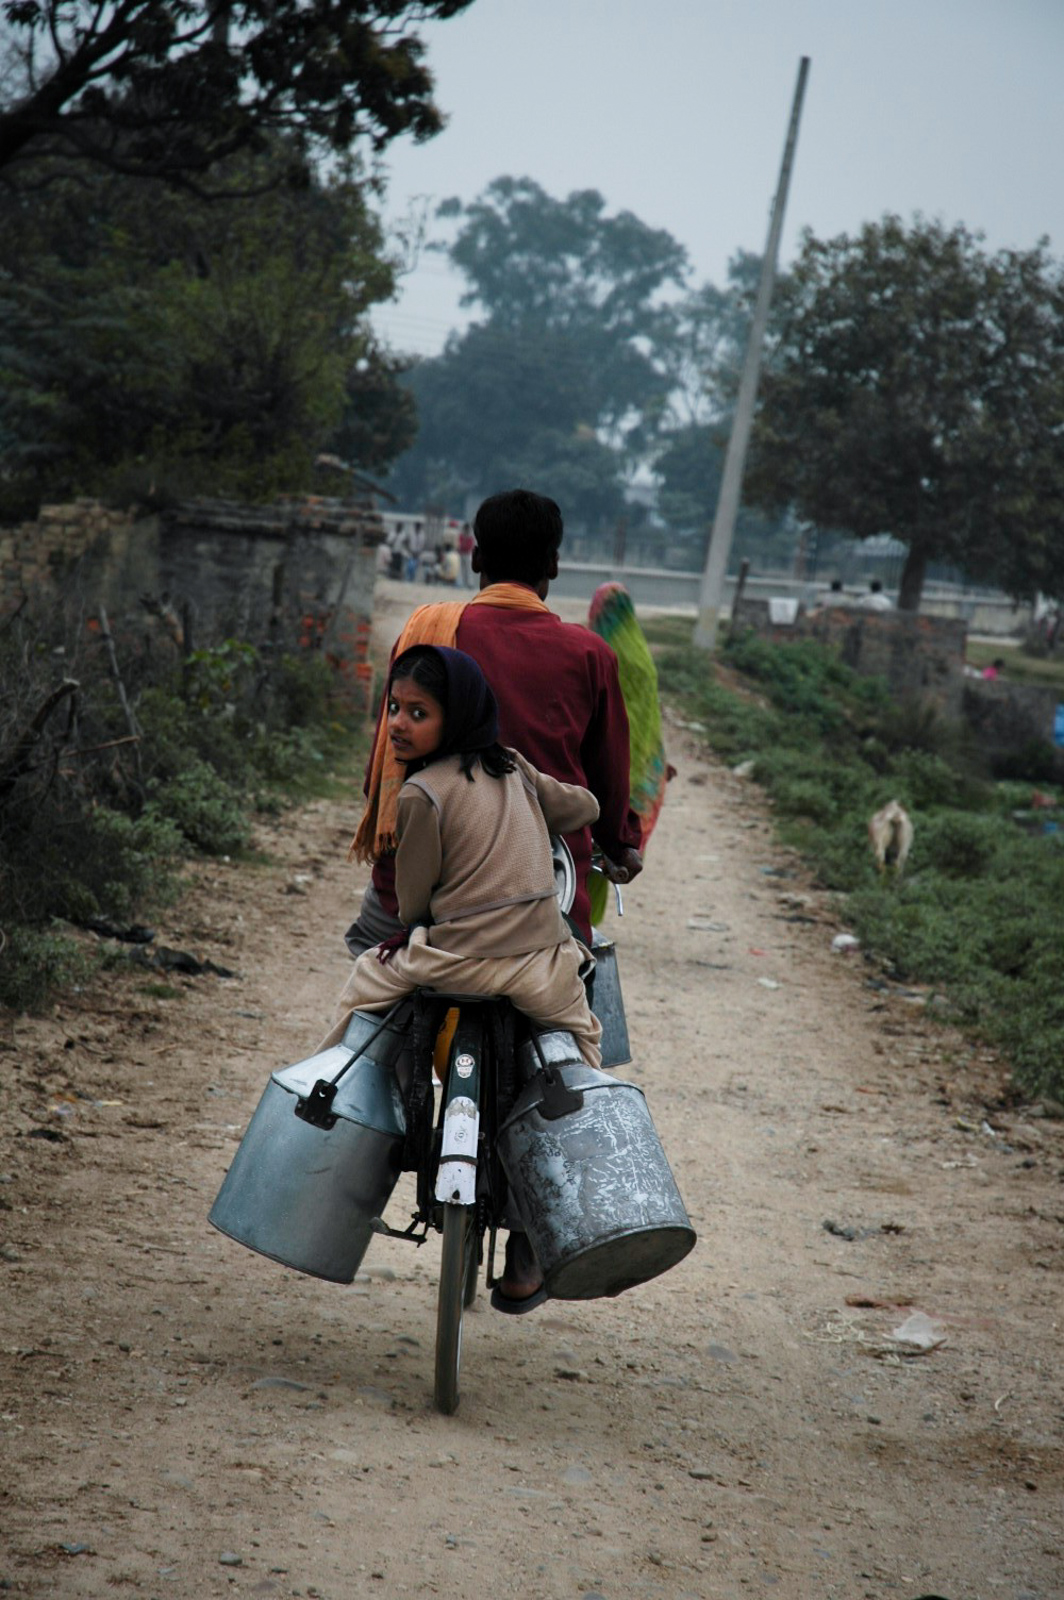  Janakpur, Nepal 2006 